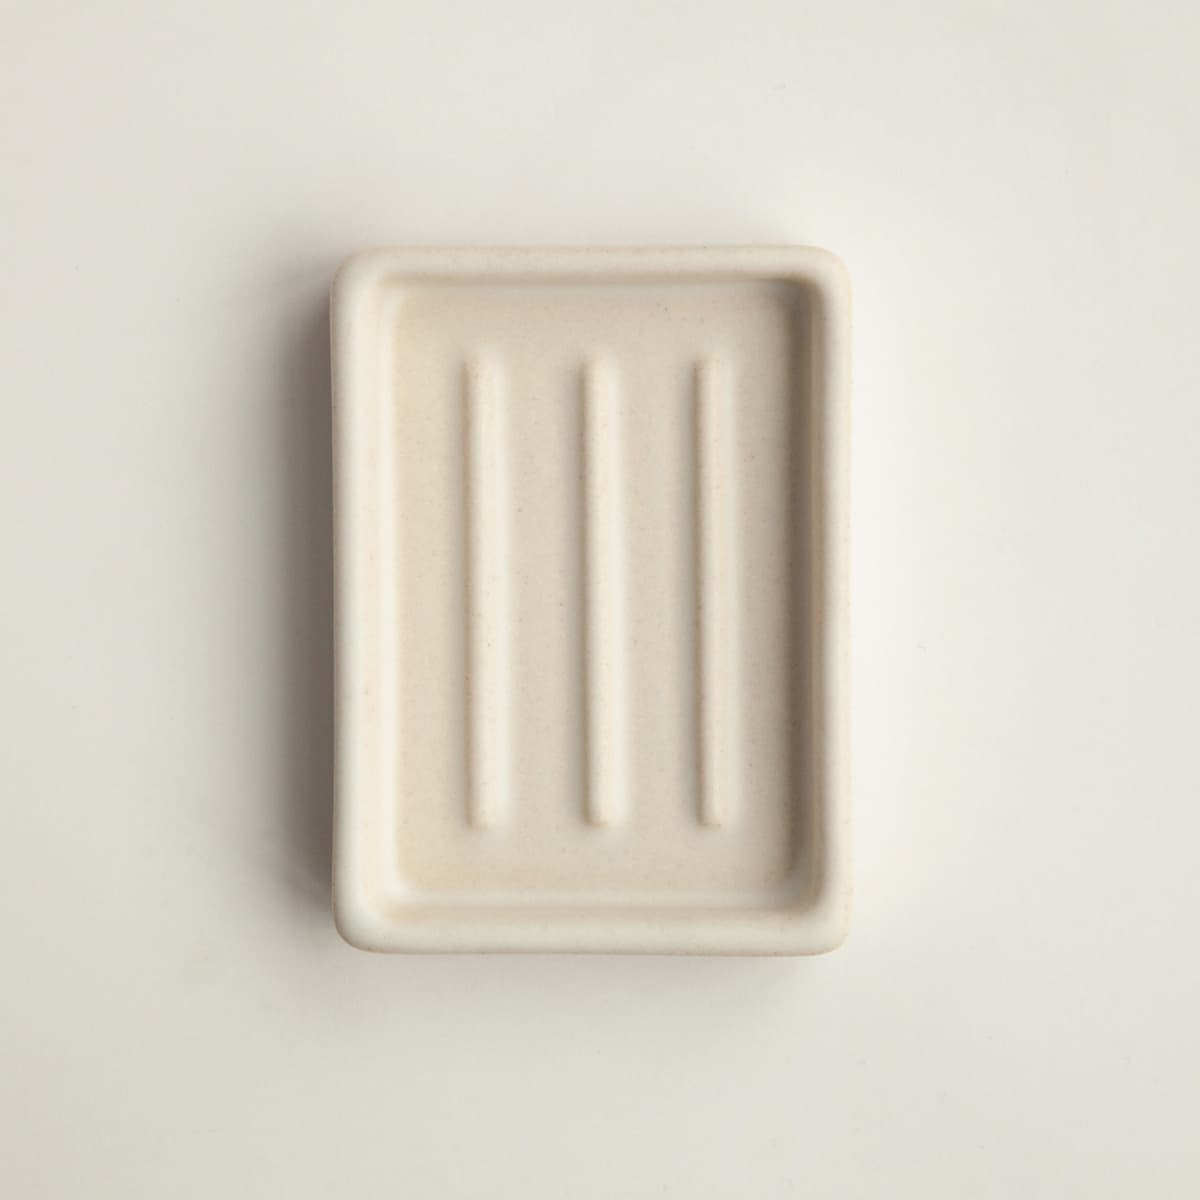 DAY 1 - Zeepbakje - keramiek - creme wit - mat - dichte  bodem - zeephouder - zeepschaaltje - keramische zeepschaal - badkamer accessoire -